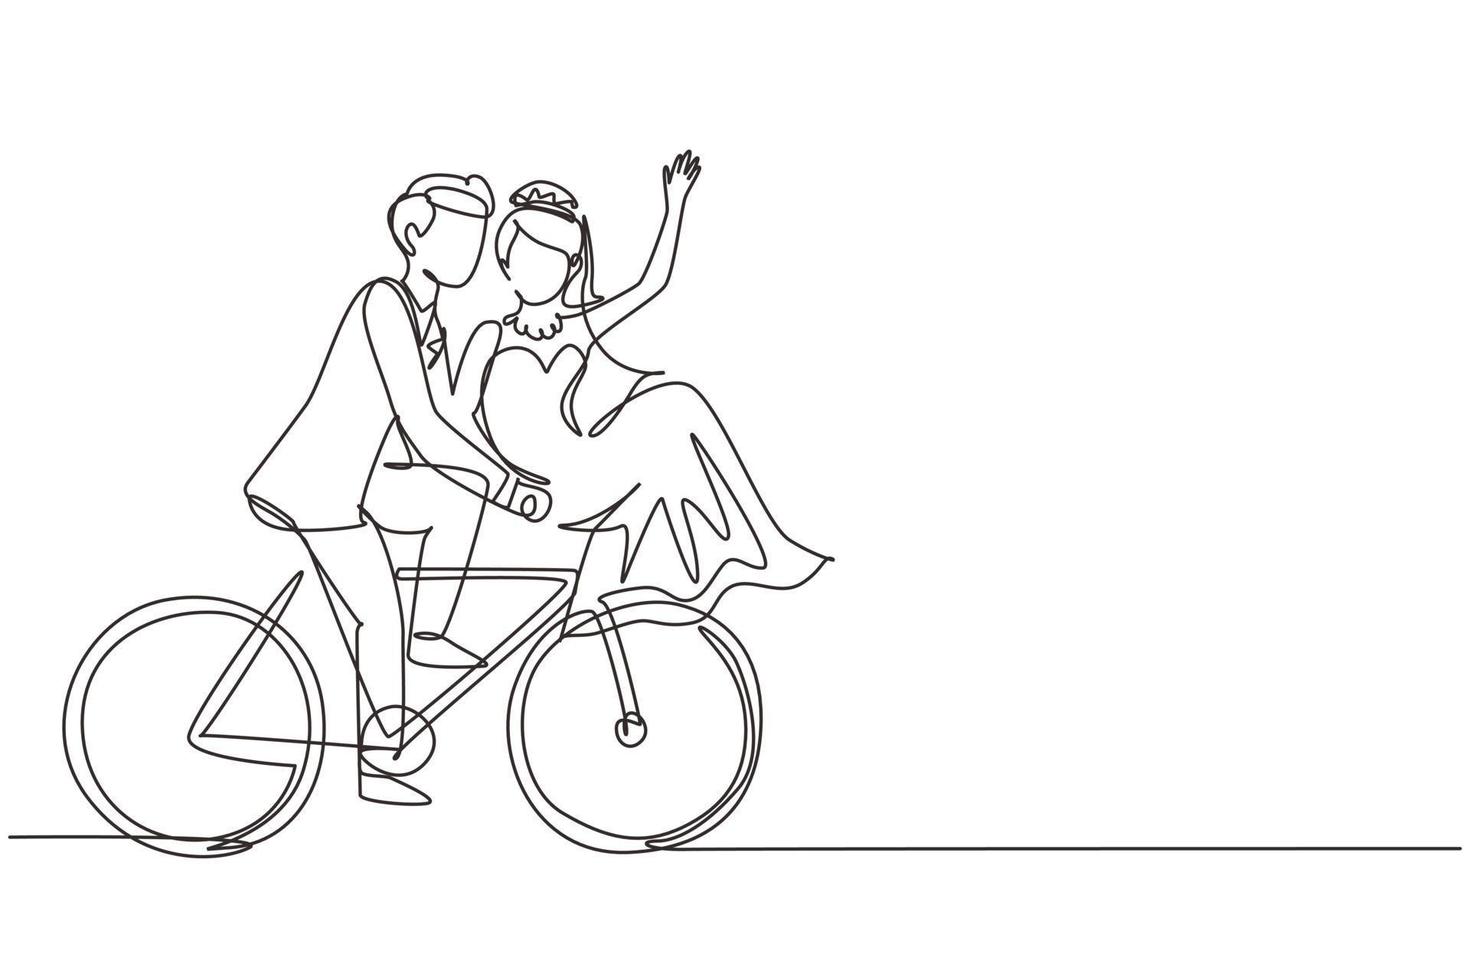 fortlaufende einzeilige zeichnung eines romantischen verheirateten paares, das fahrrad fährt. mann und frau verliebt in hochzeitskleid. Glückliches Ehepaar, das zusammen Rad fährt. einzeiliges zeichnen design vektorgrafik illustration vektor